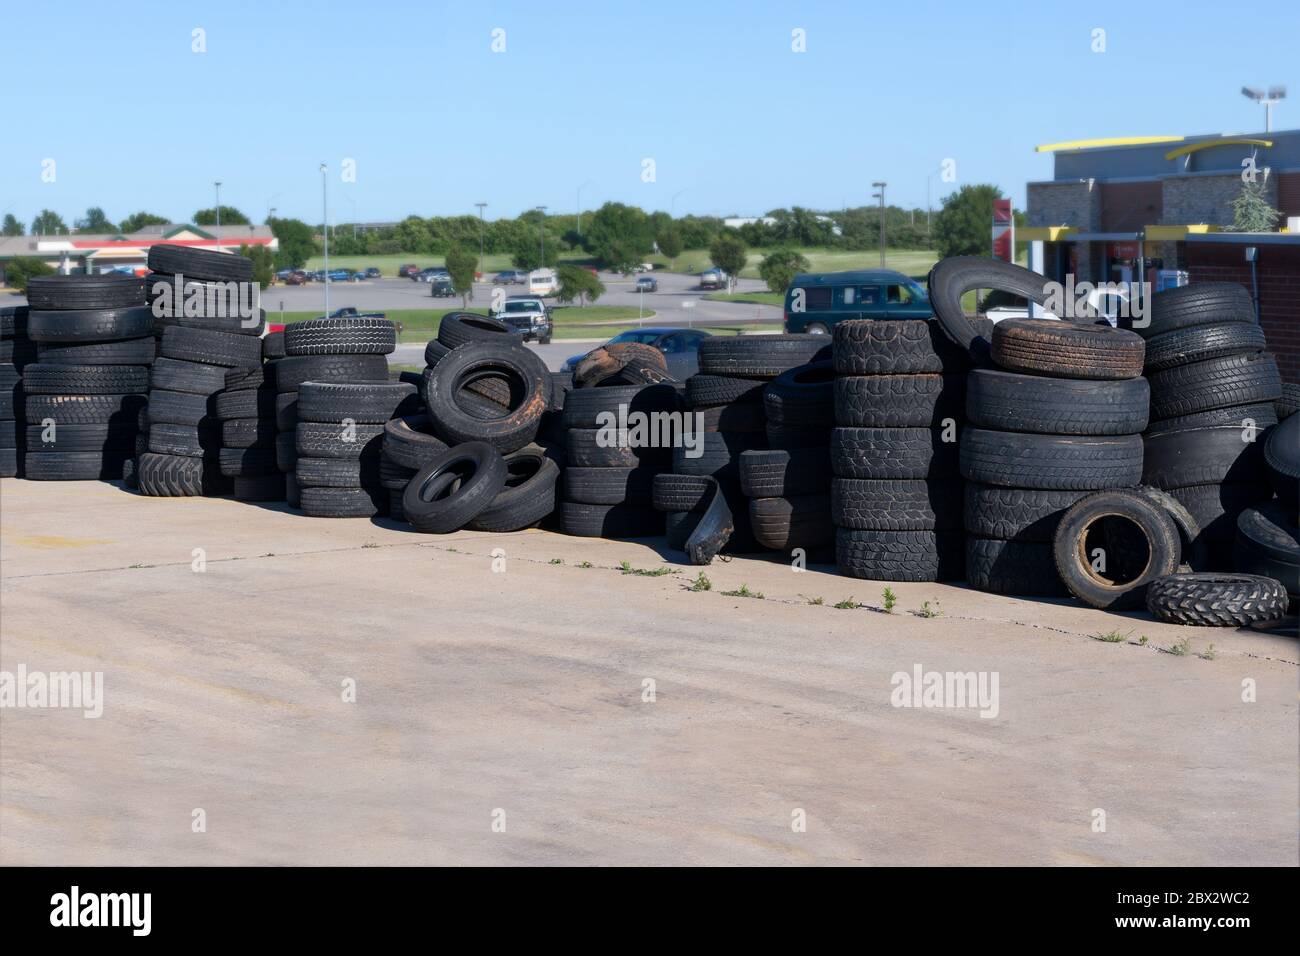 Les pneus de voitures anciennes se sont détériorés au niveau de la pile combinée en attendant d'être détruits. Pile de pneus de camion d'occasion dans l'atelier de réparation de pneus. Ancien pneu du service de réparation automobile Banque D'Images